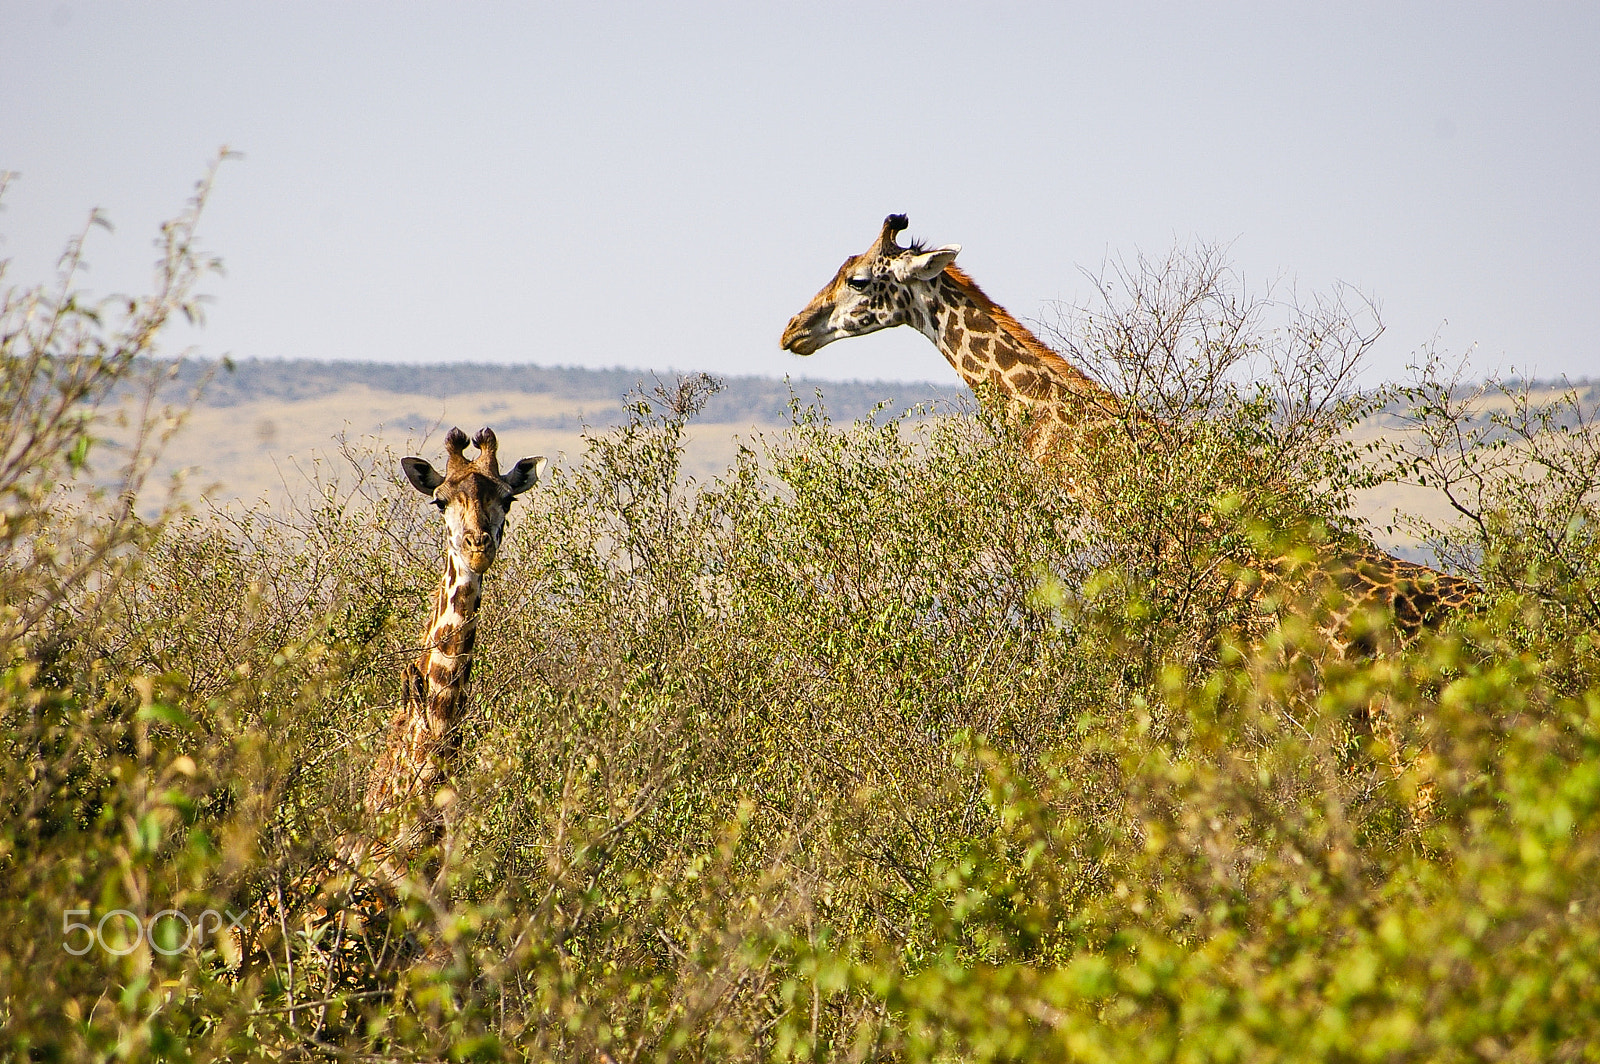 Pentax K100D + Pentax smc DA 50-200mm F4-5.6 ED sample photo. Giraffe in kenya's maasai mara photography